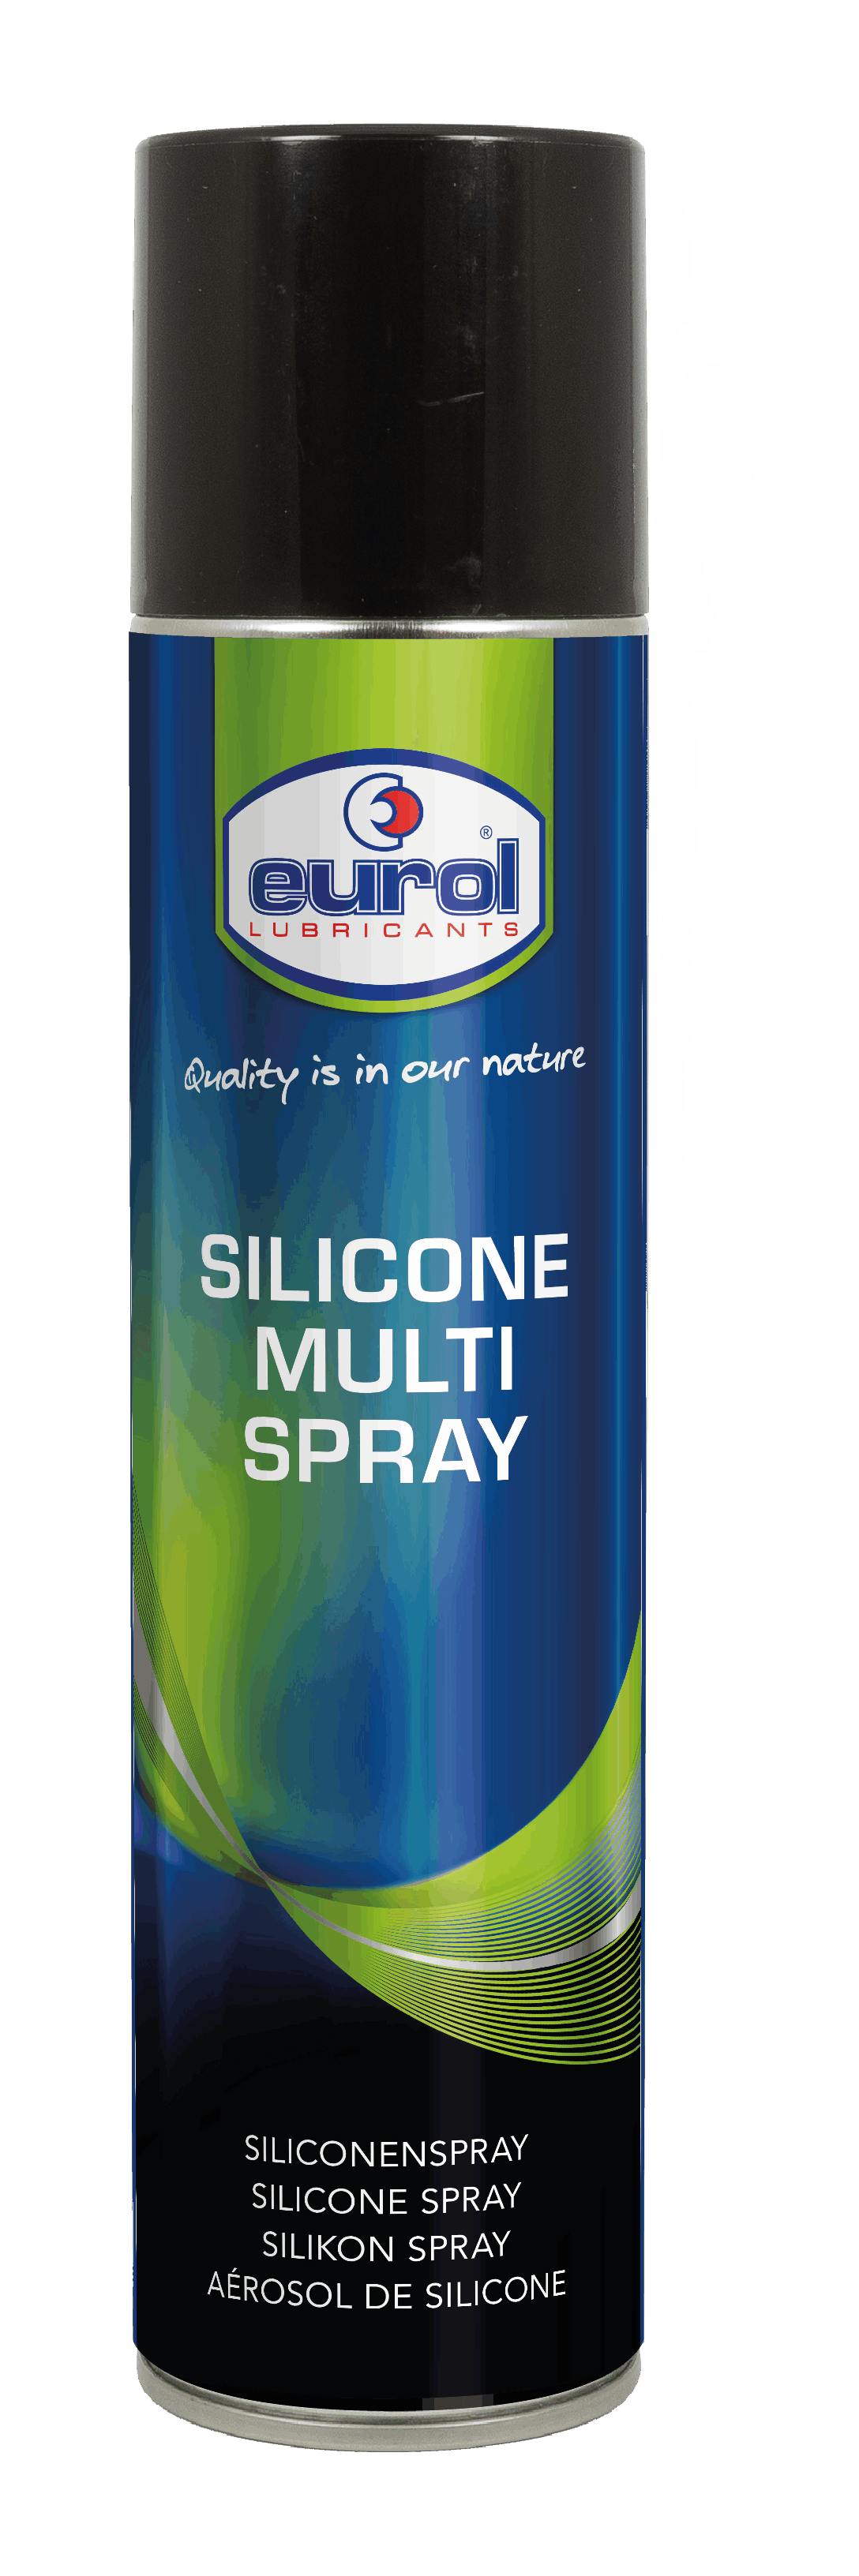 Silicone Multi Spray